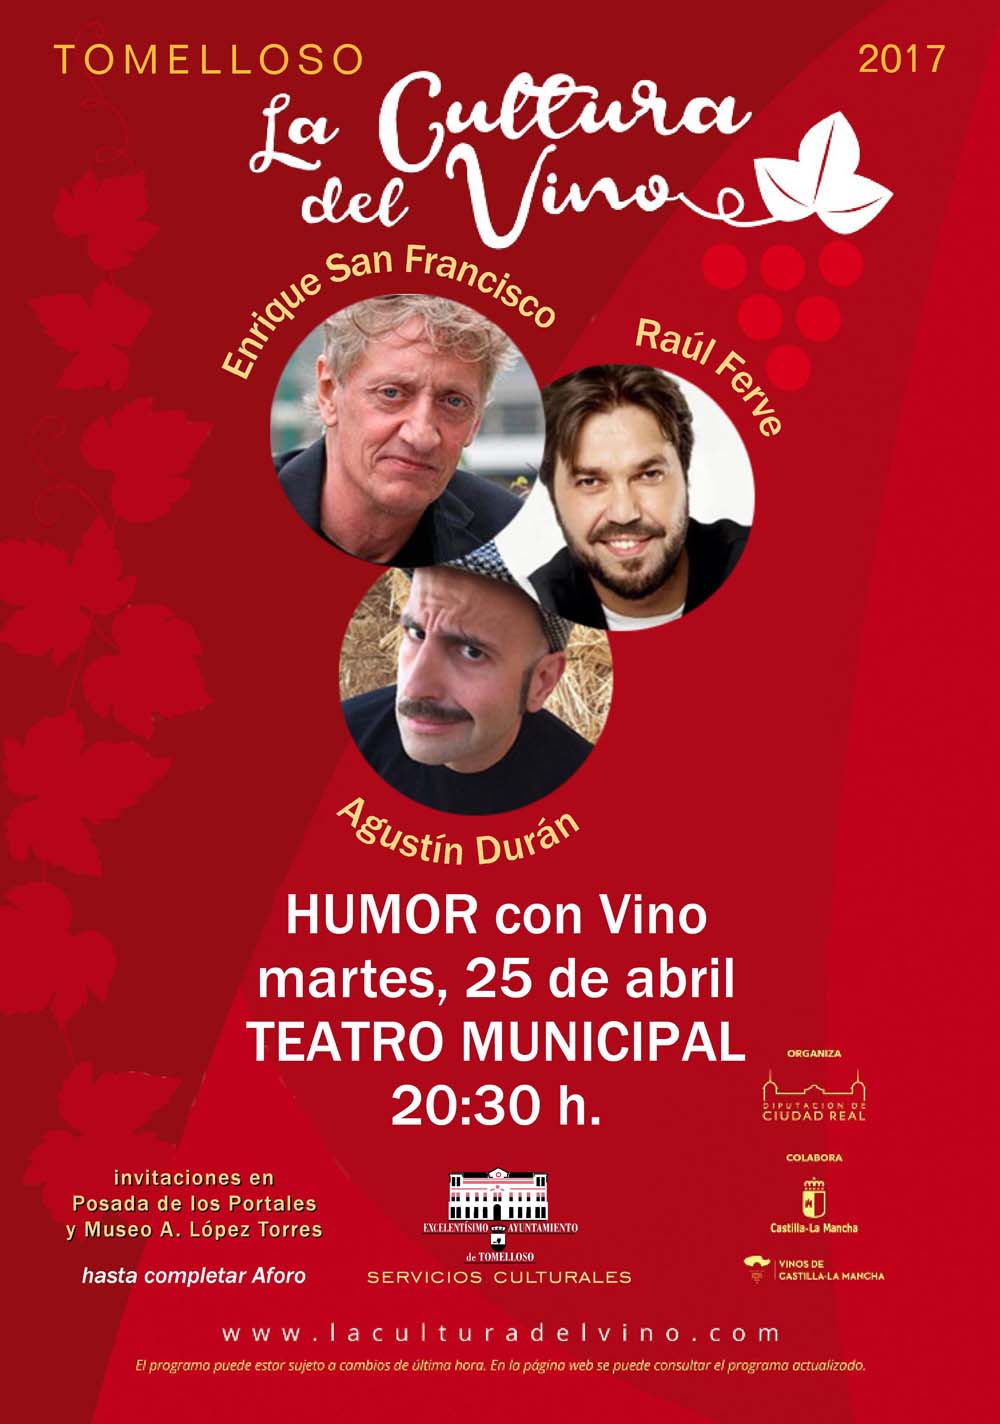 “Humor con vino” llega el próximo martes a Tomelloso